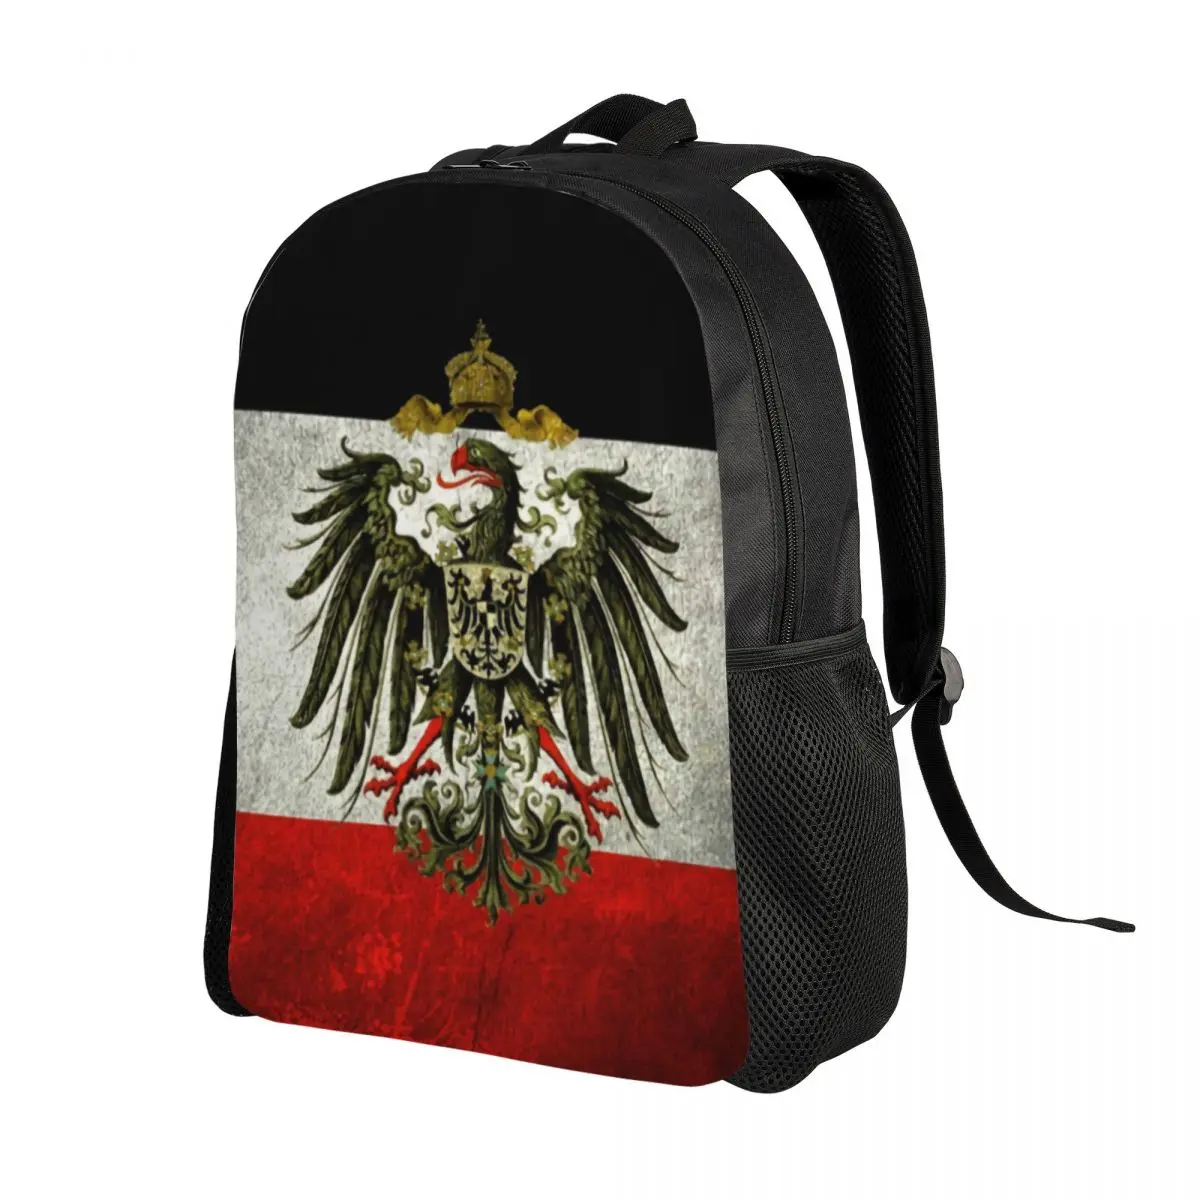 האימפריה הגרמנית דגל גרמניה נסיעות תיק גב גברים, נשים, בית ספר נייד בוא נזוז סטודנט Daypack שקיות - 1